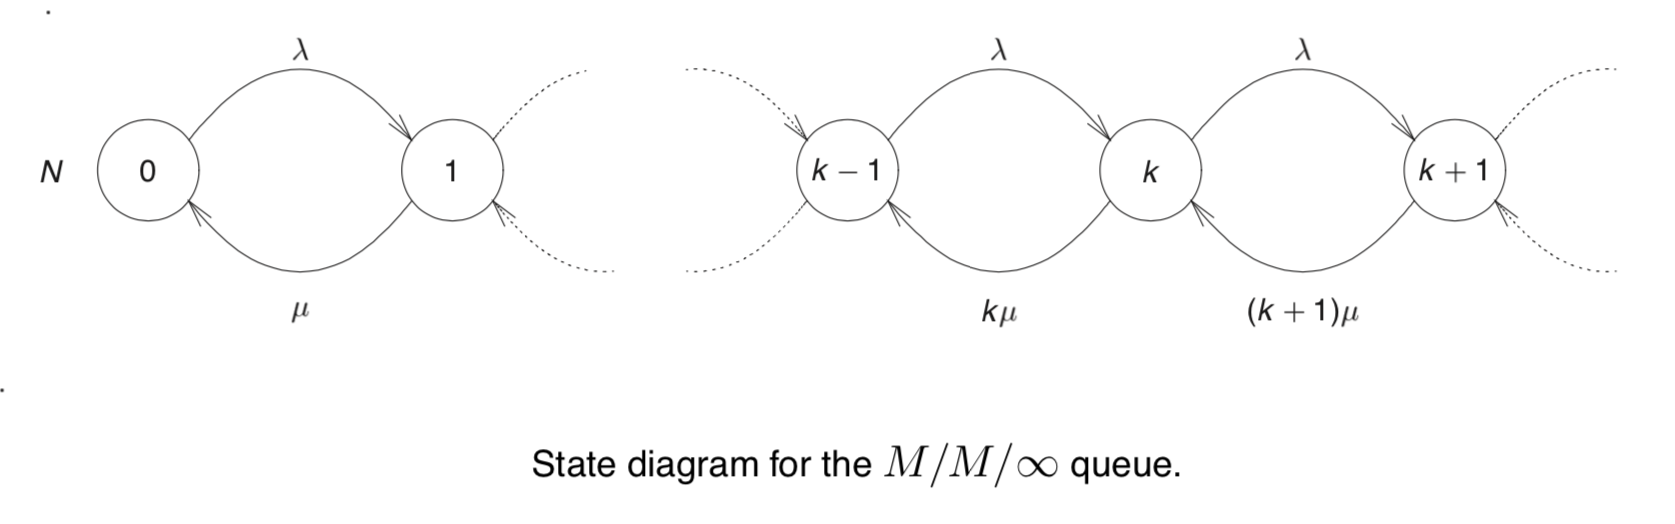 M/M/∞ 排队系统的状态转移图